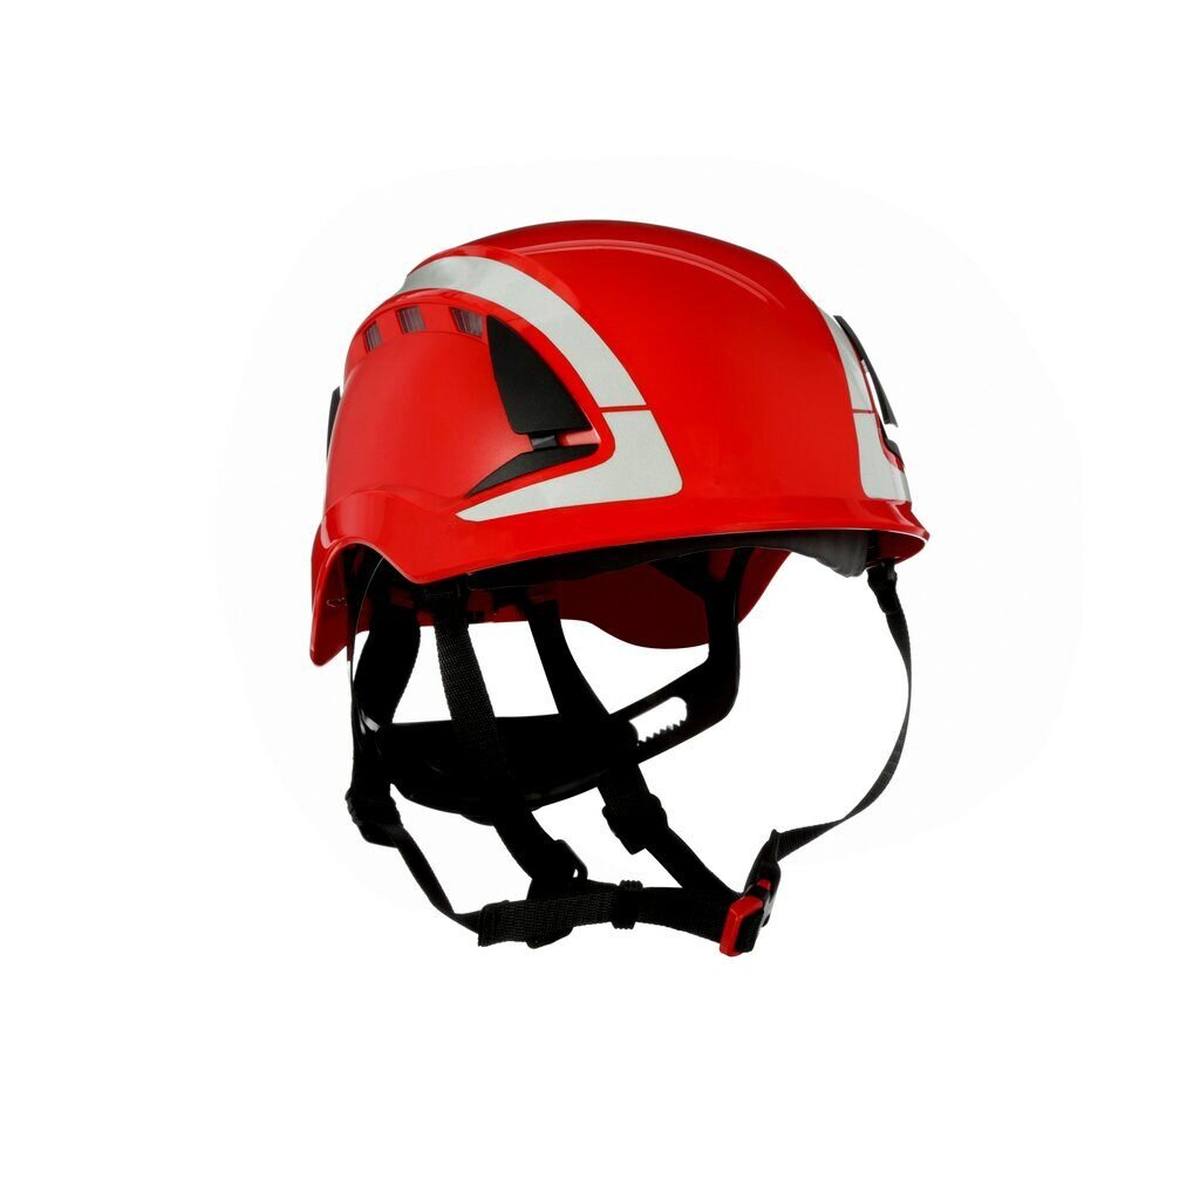 3M SecureFit casque de protection, X5005V-CE, rouge, ventilé, réfléchissant, CE